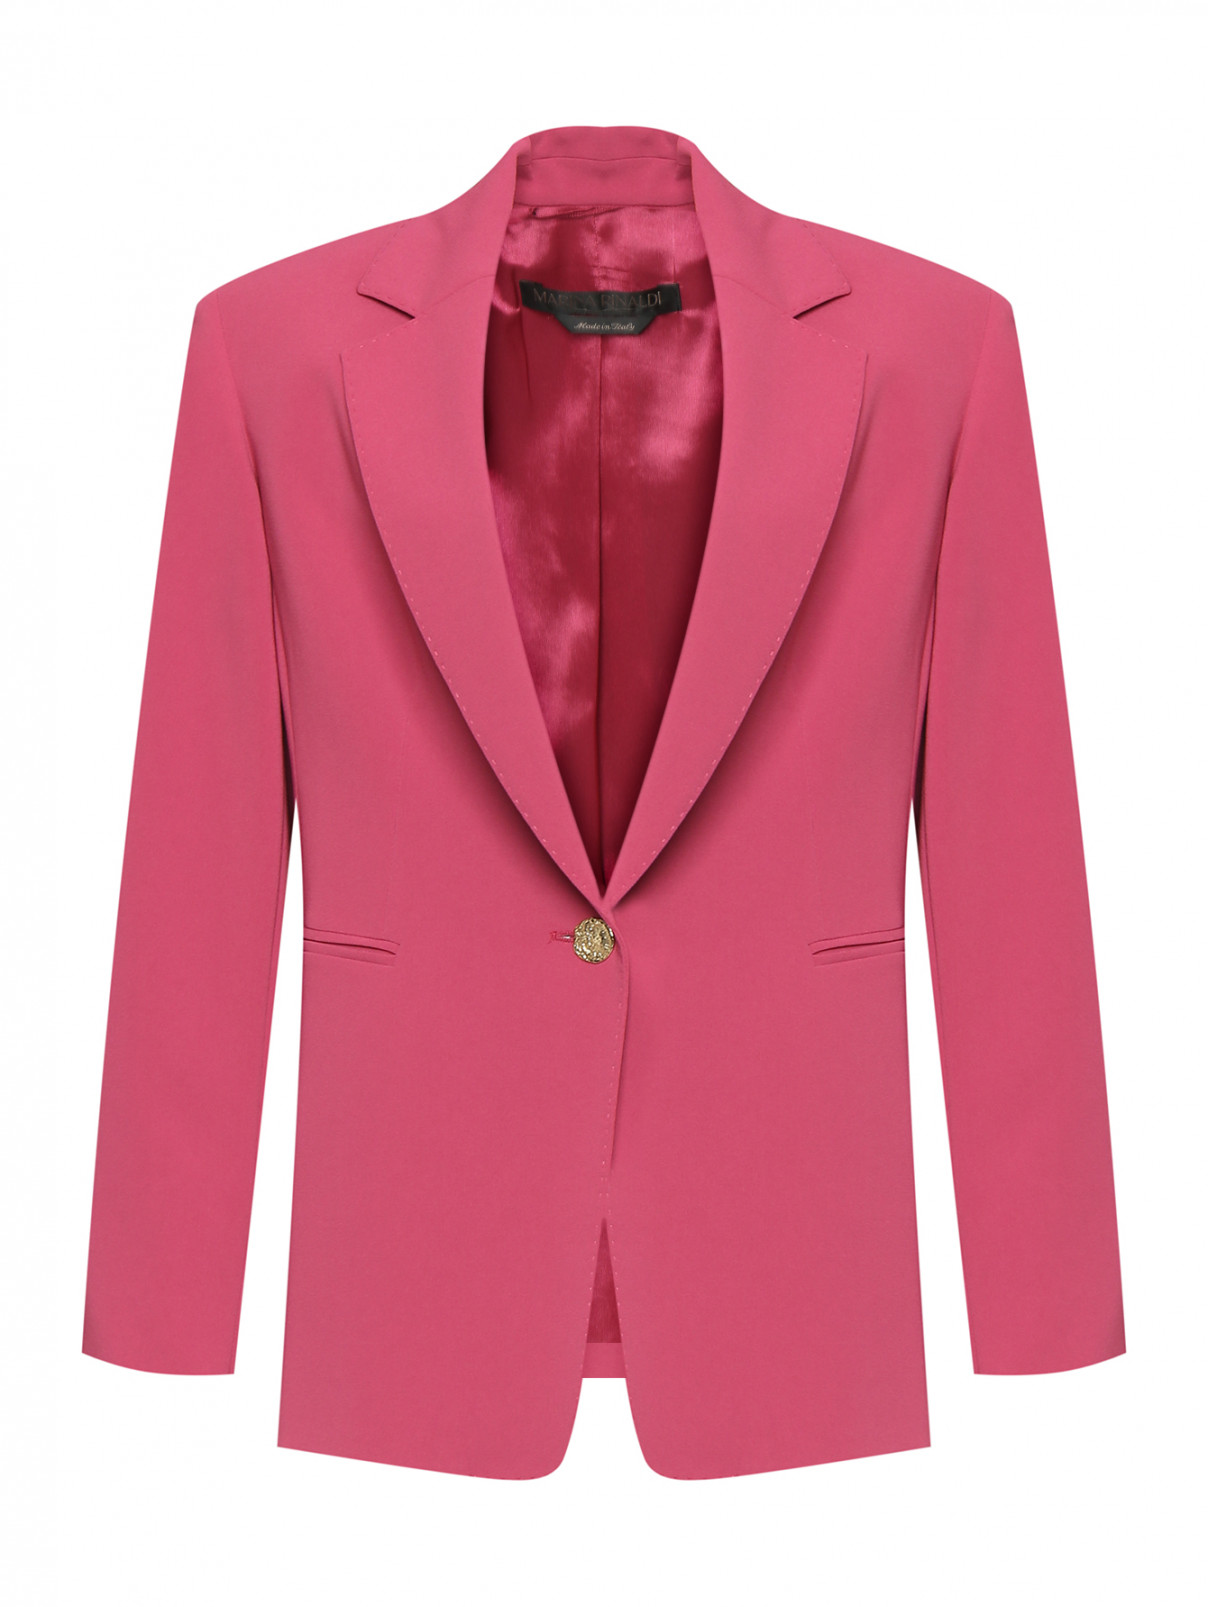 Однобортный жакет с золотой пуговицей Marina Rinaldi  –  Общий вид  – Цвет:  Розовый